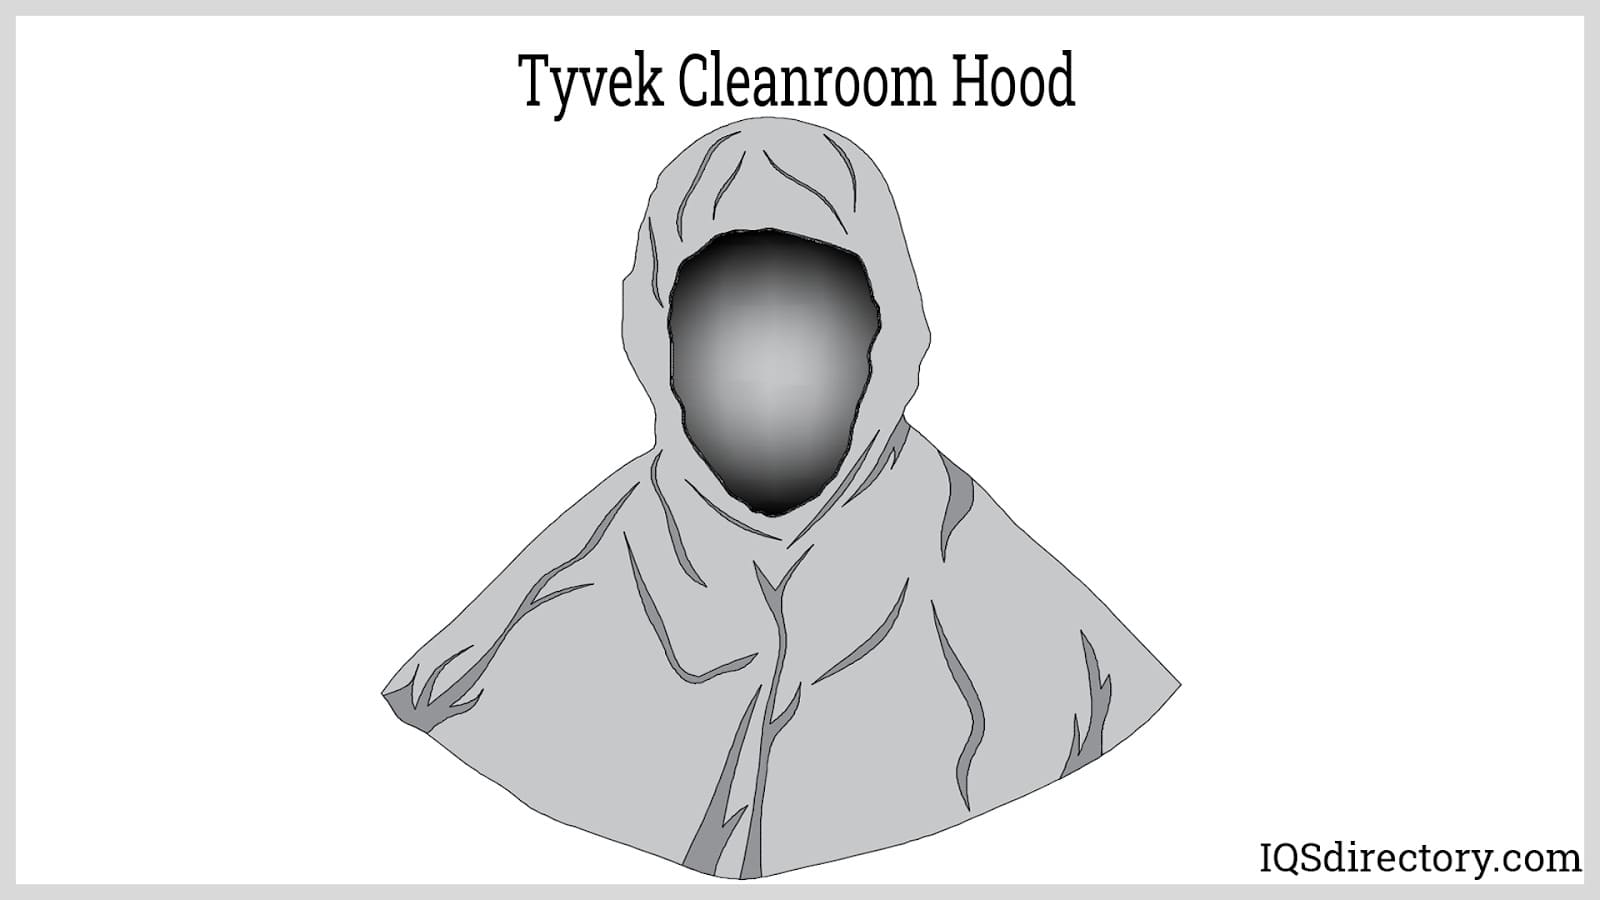 Tyrek Cleanroom Hood